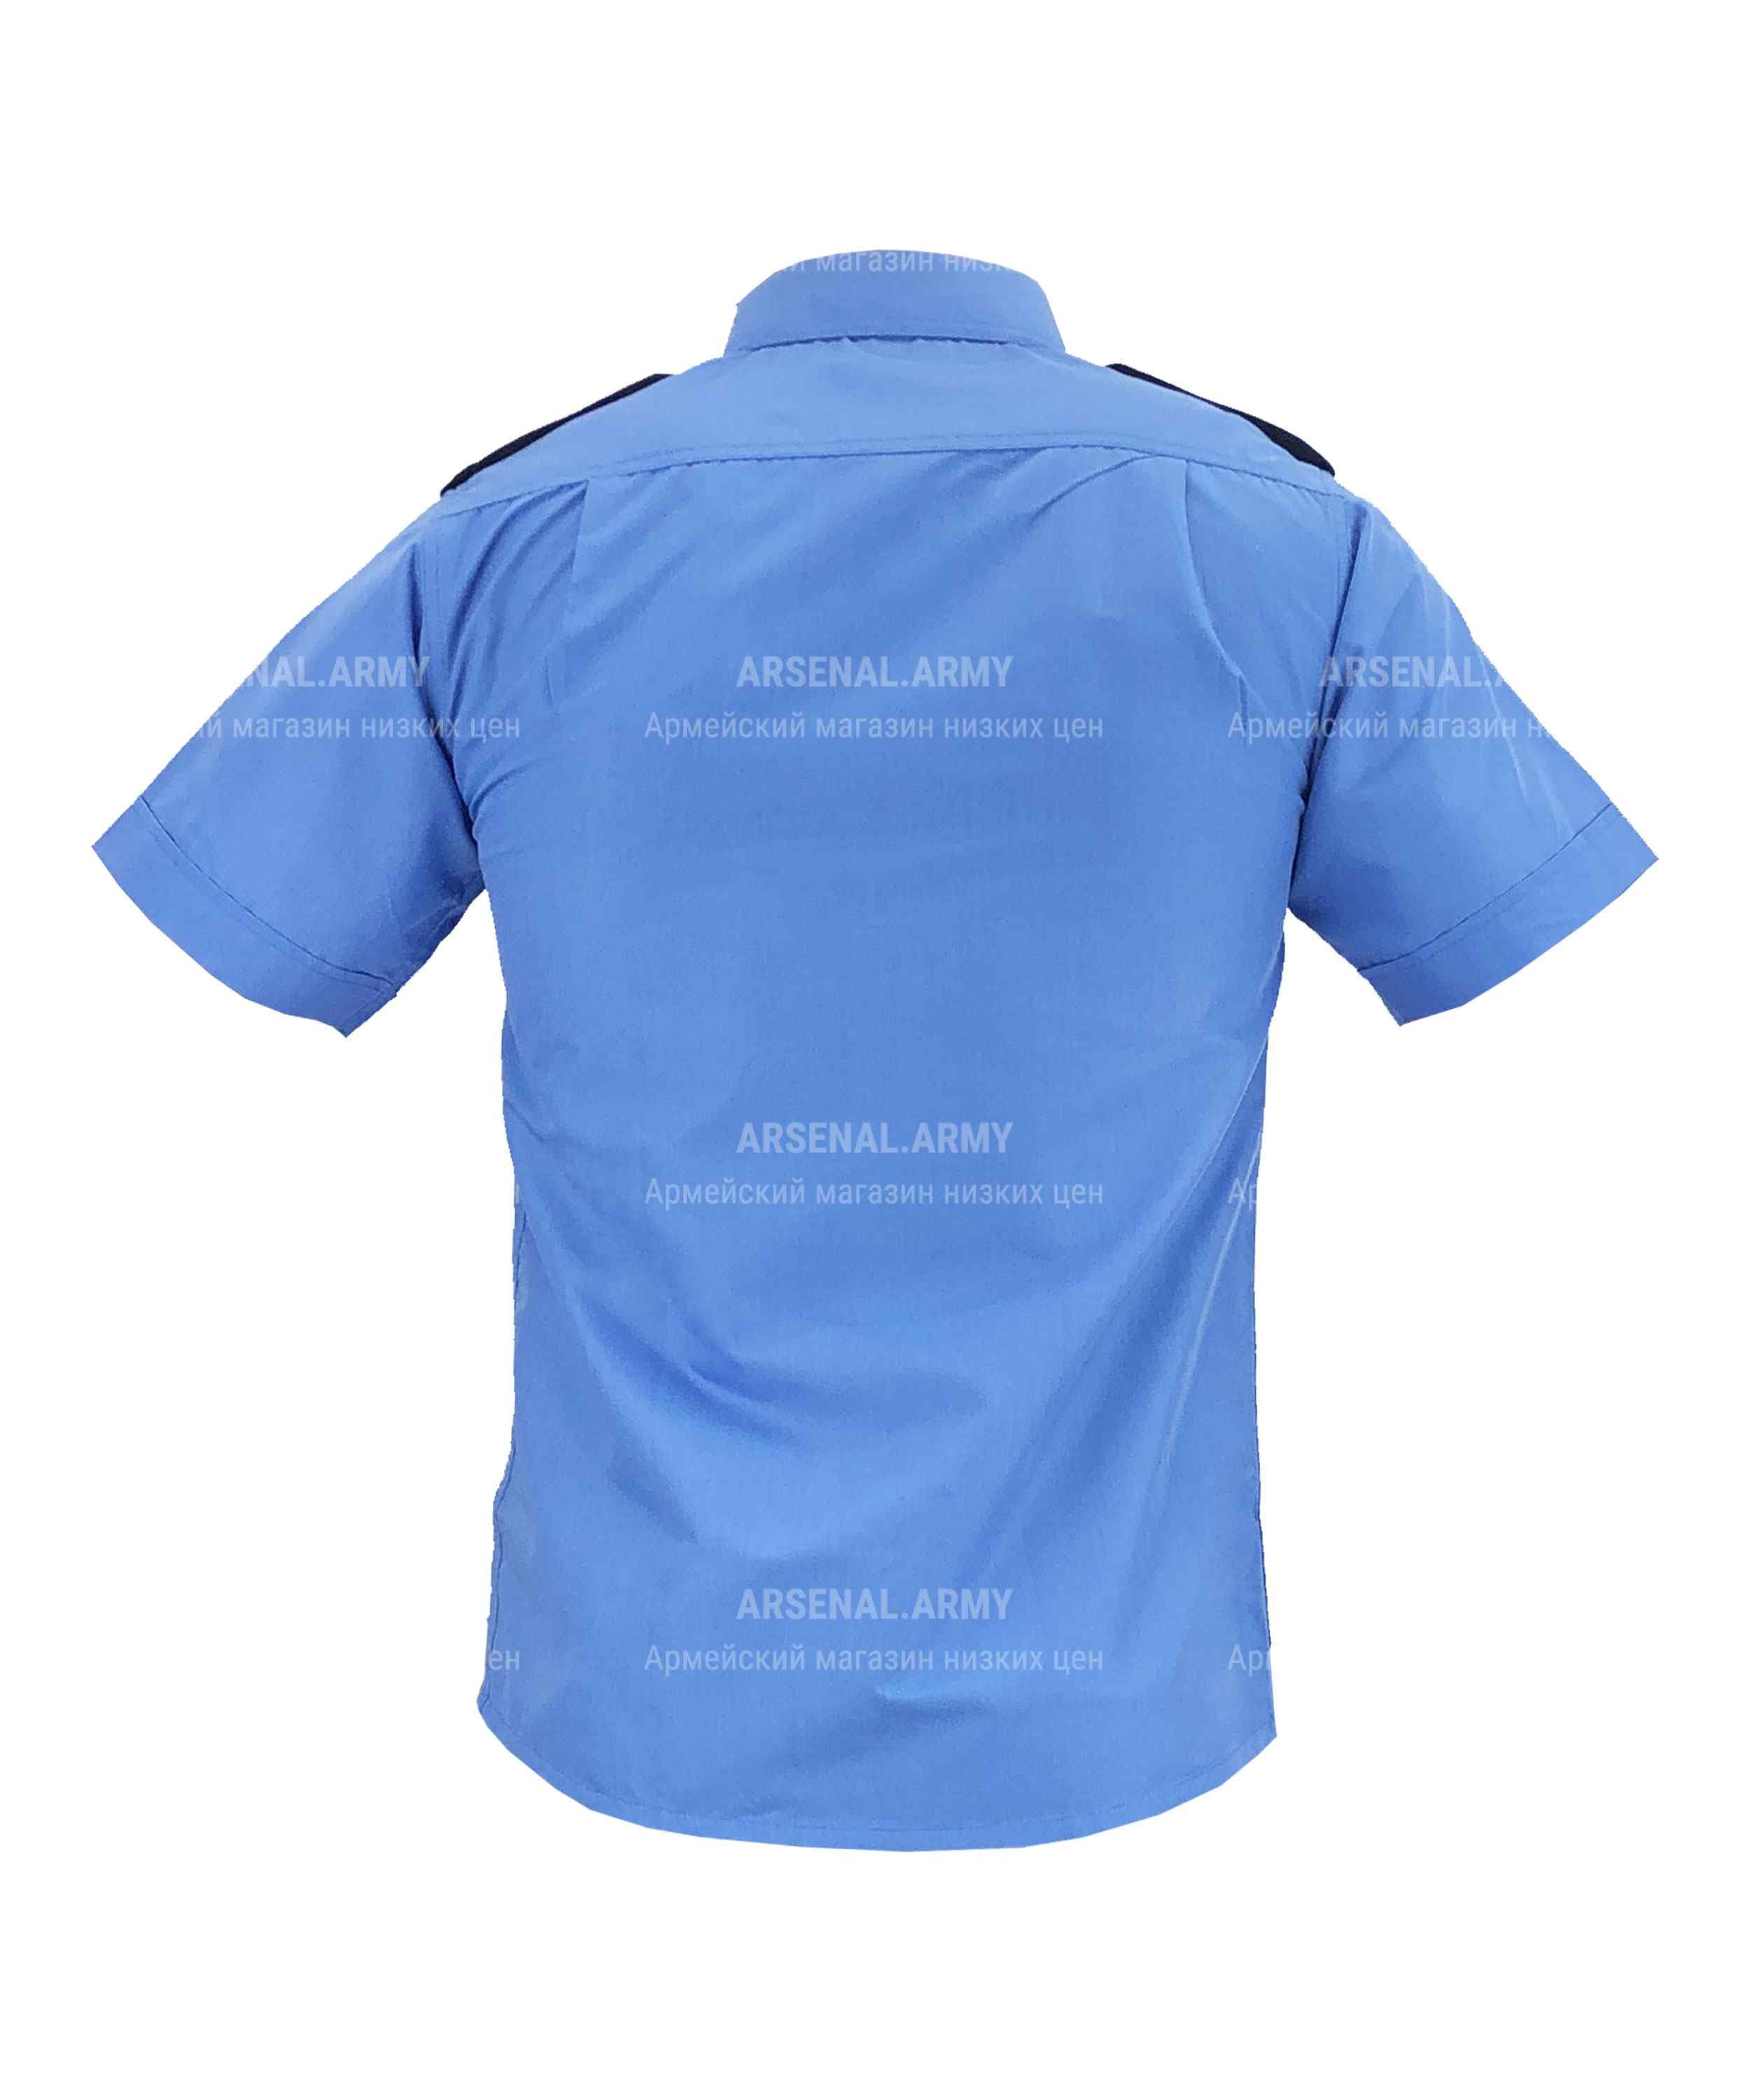 Рубашка охрана синяя короткий рукав — 2